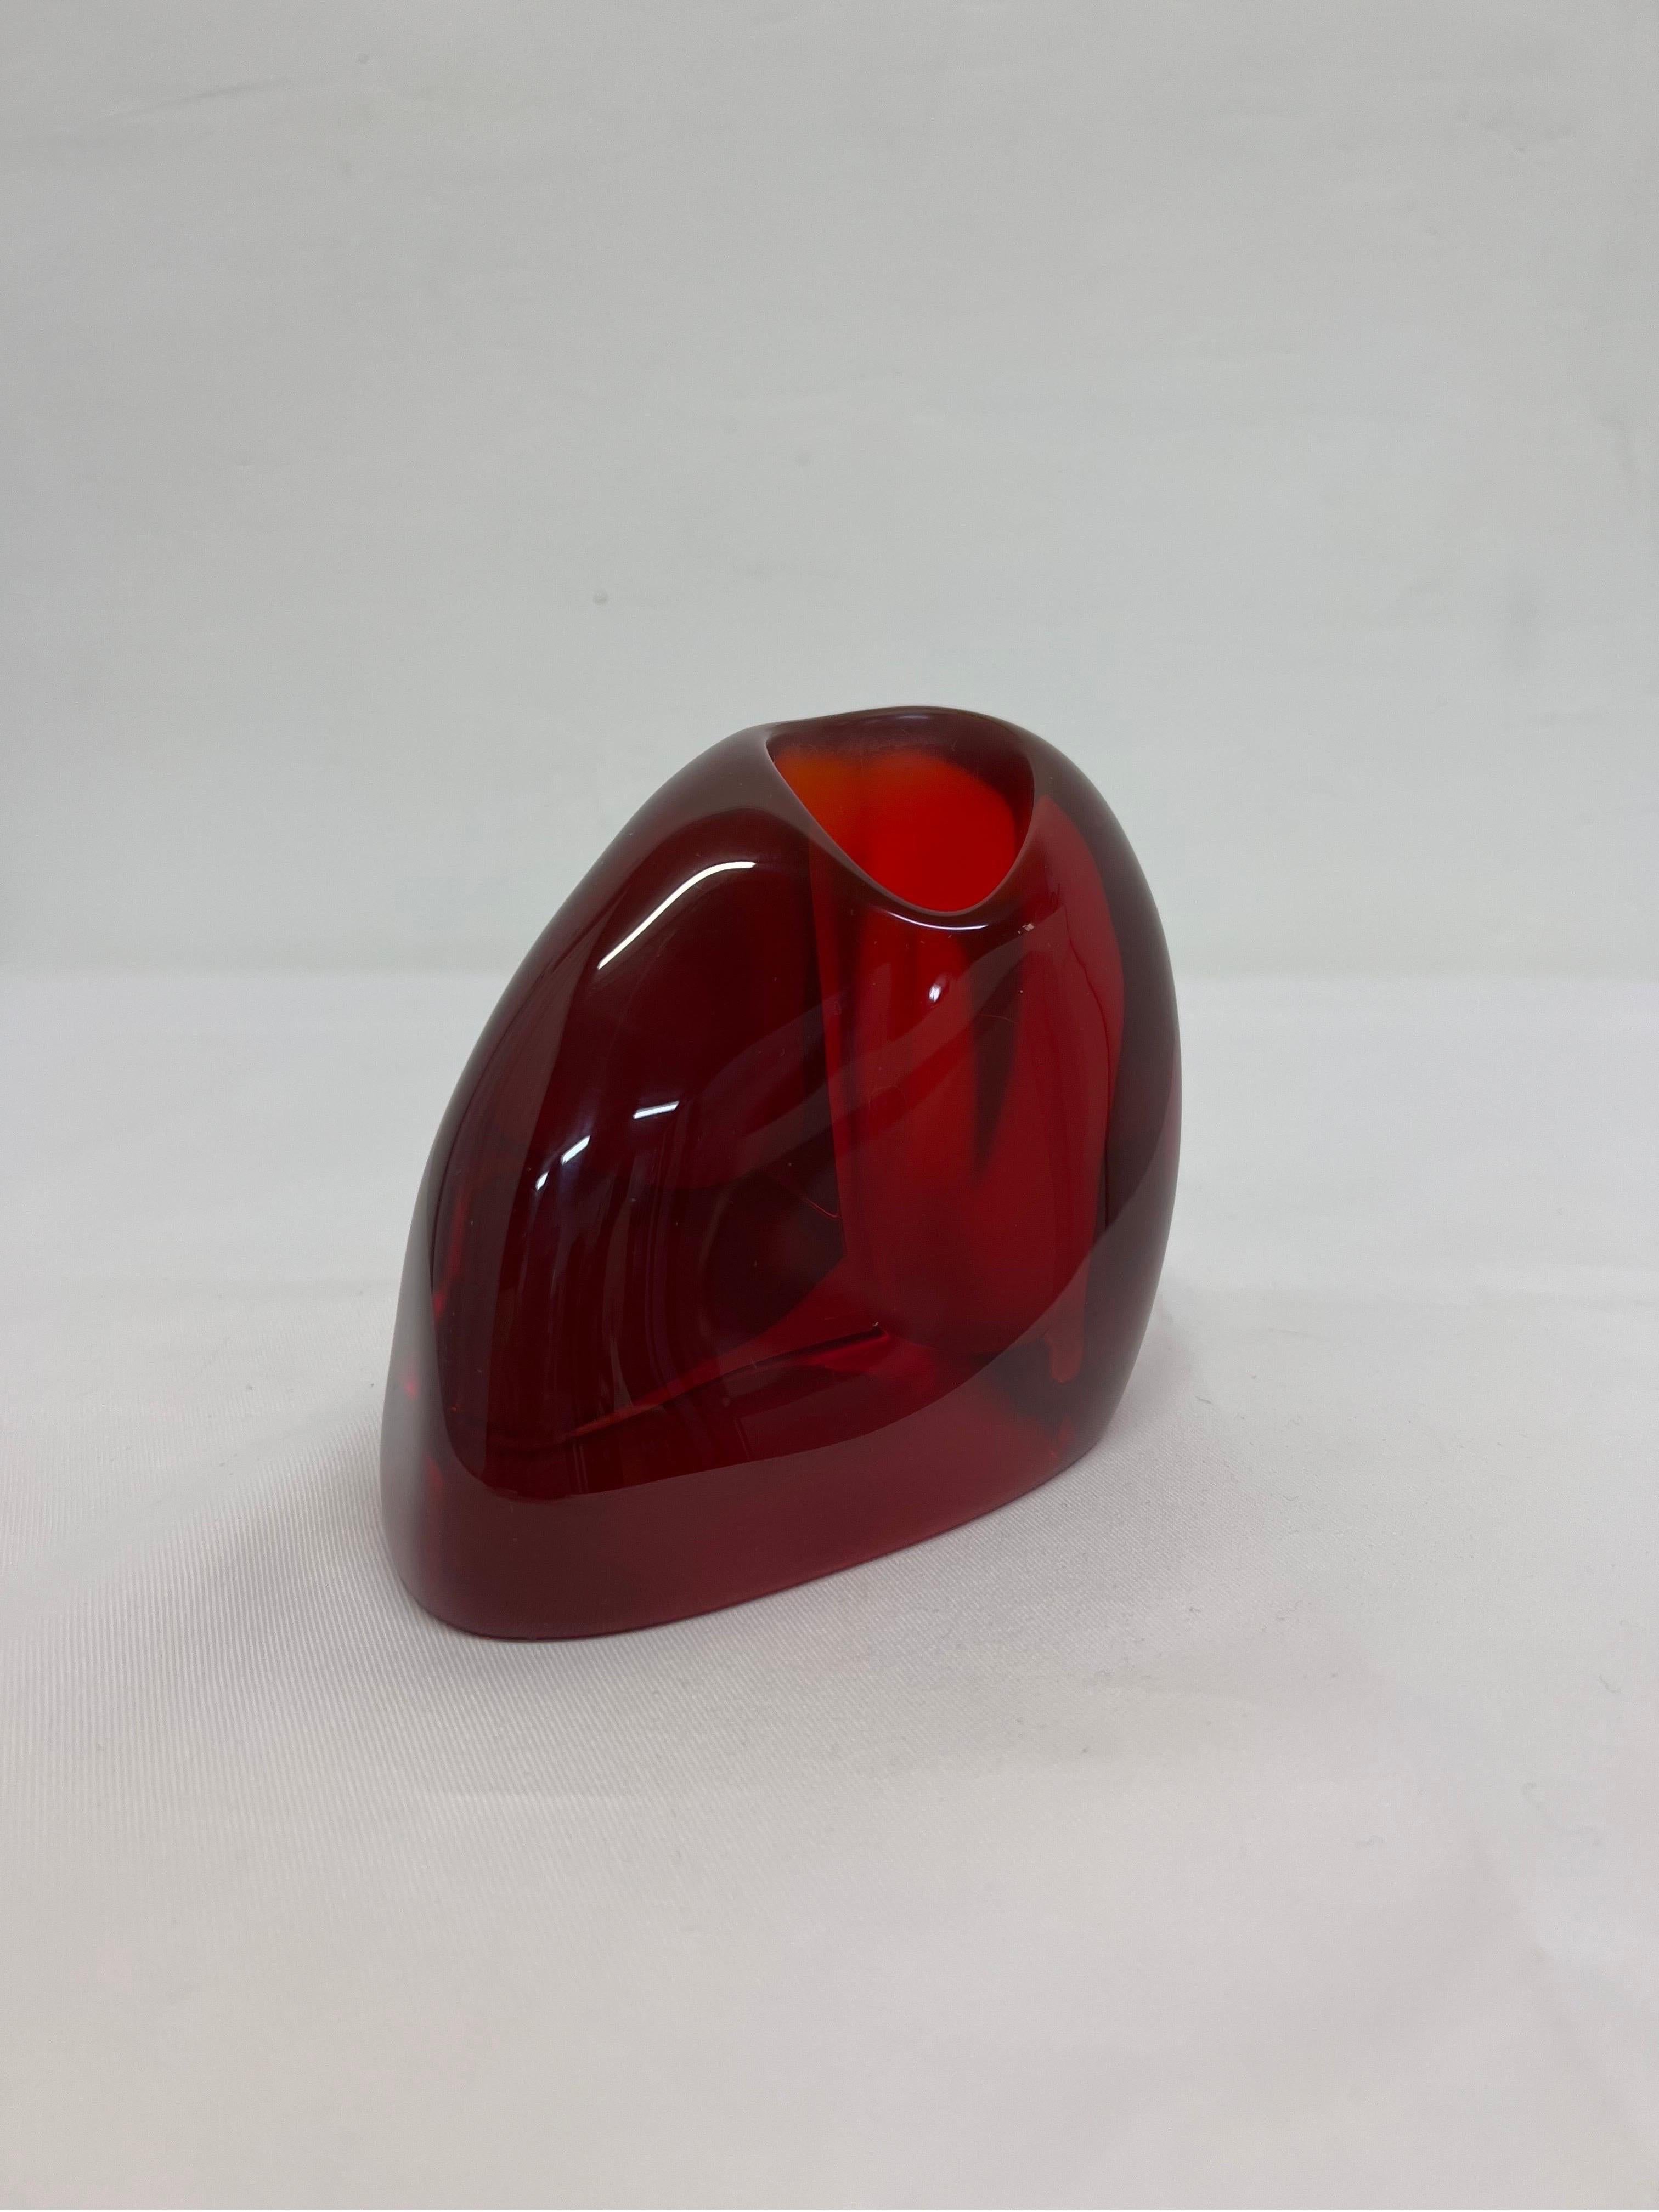 Brazilian Modern Translucent Red Resin Bud Vase, 1980s 4